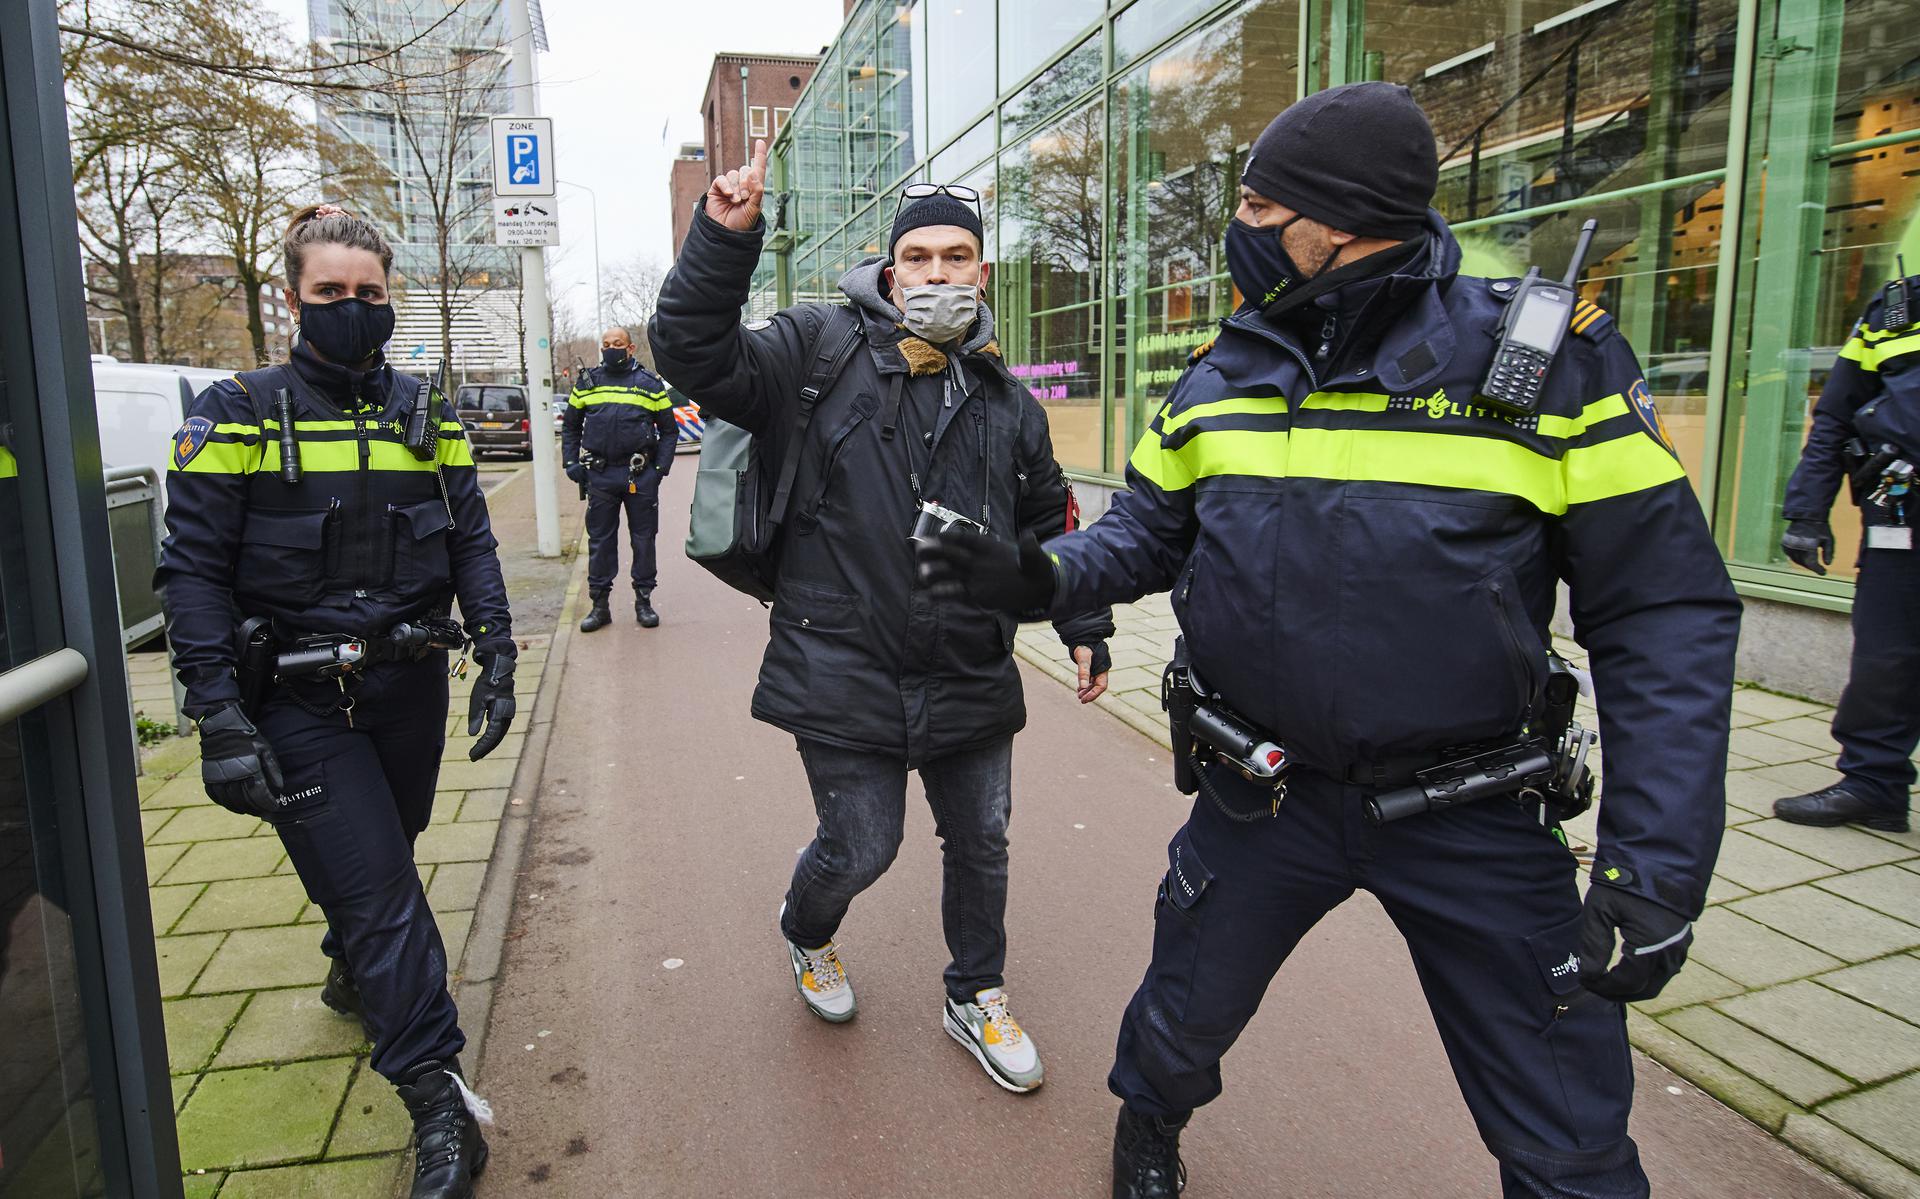 Straatfotograaf Joram Krol wordt aangehouden bij een demonstratie van Extiction Rebellion.